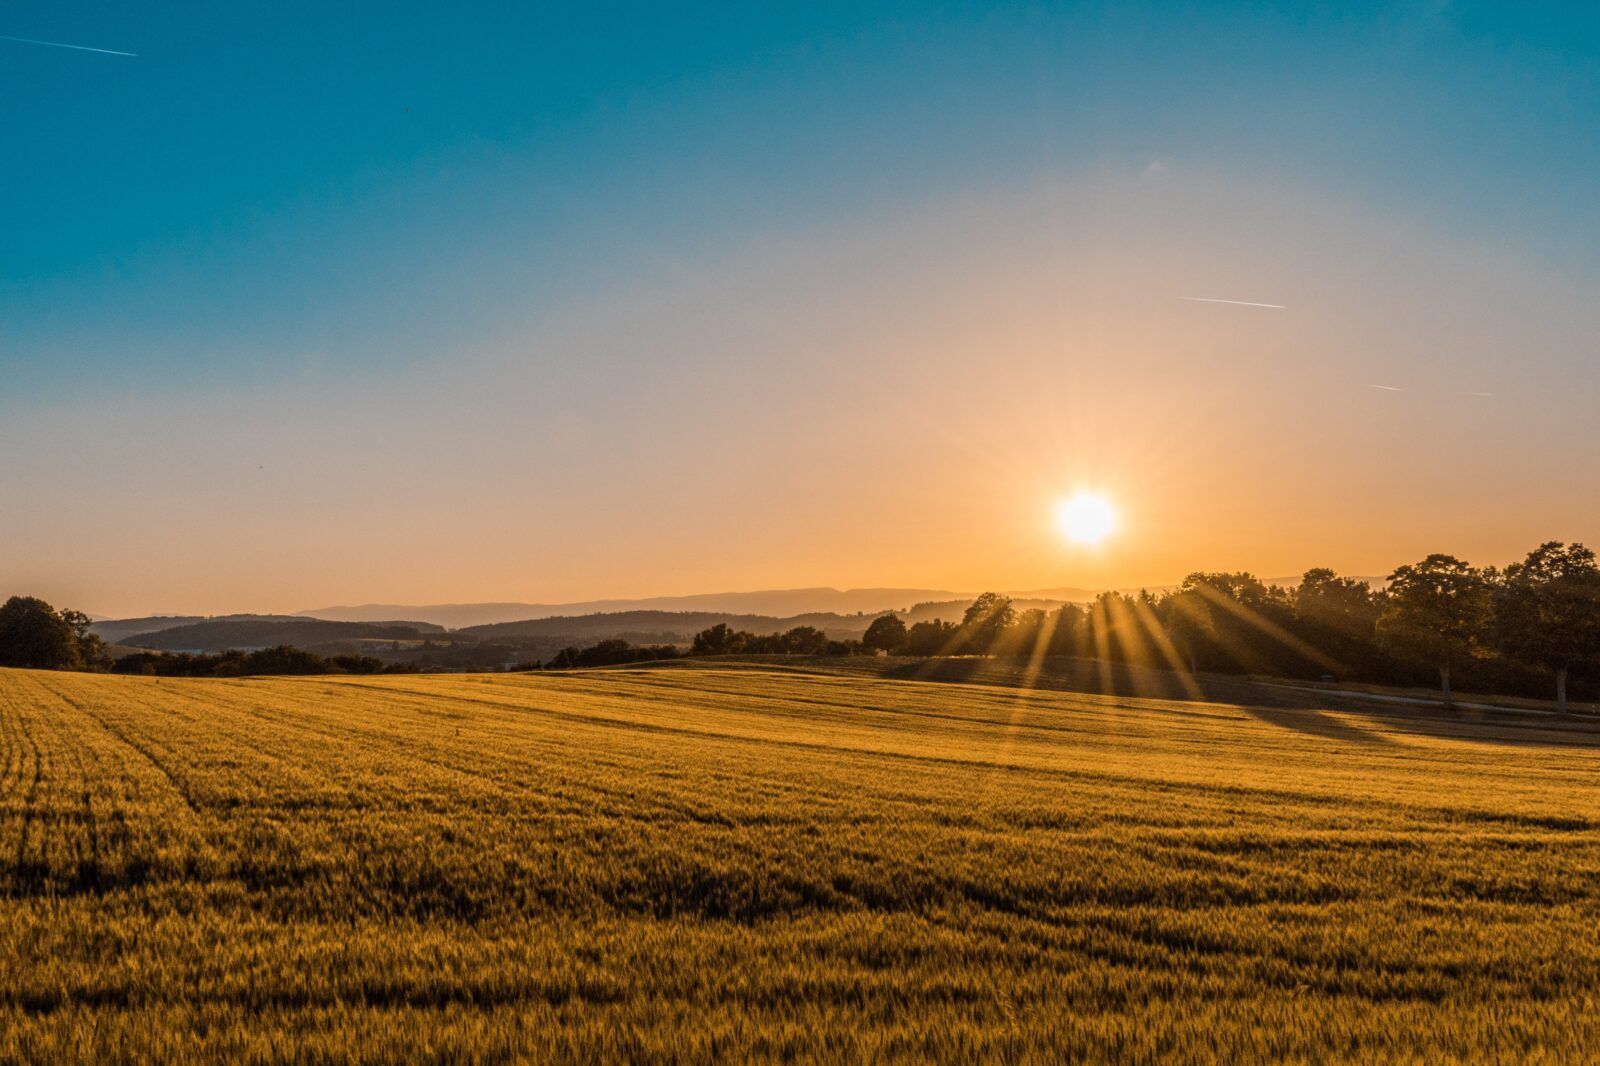 Eine Landschaftsaufnahme zeigt ein Getreidefeld mit tiefstehender Sonne am Himmel.